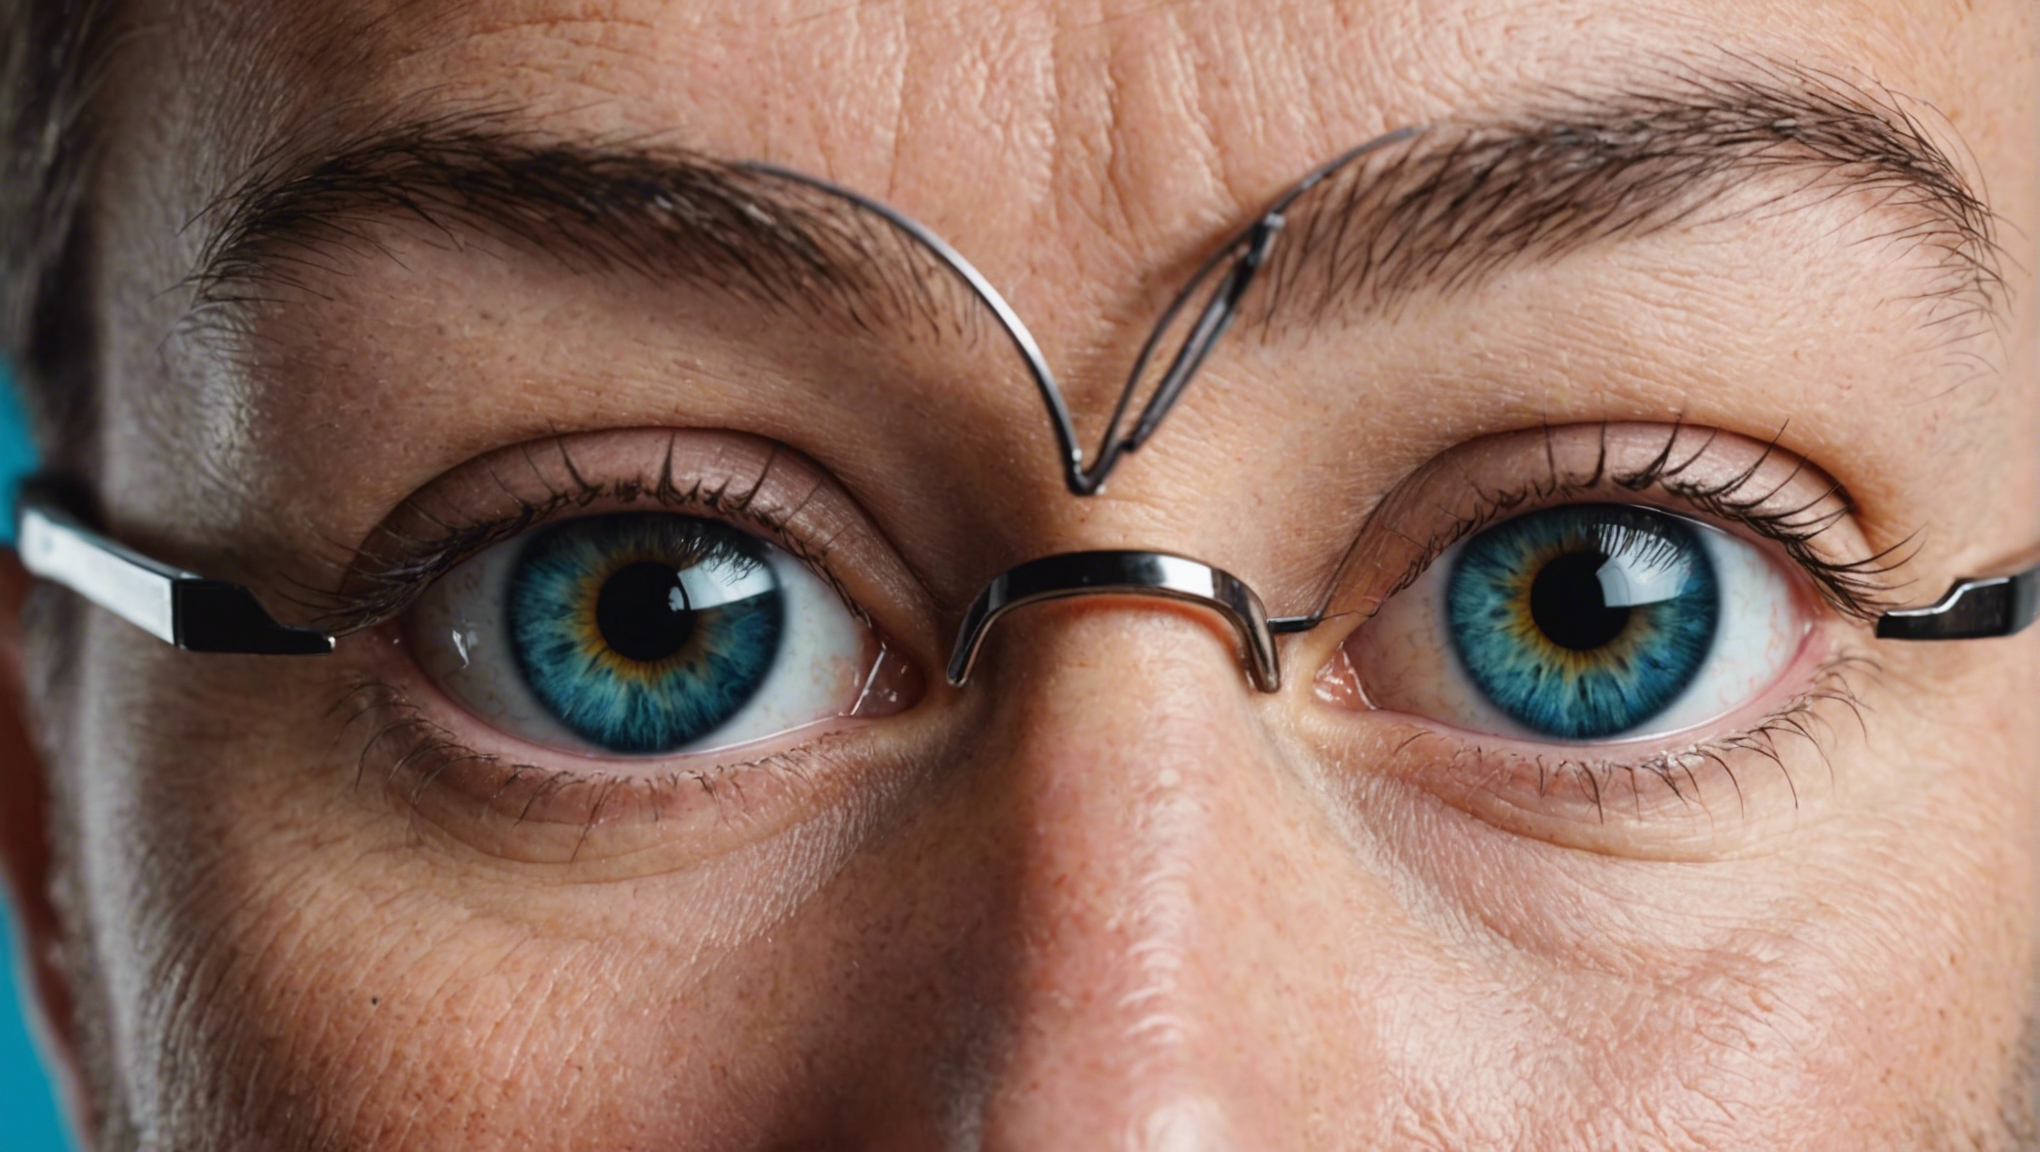 découvrez comment une opération des yeux peut vous offrir une solution miracle pour dire adieu à vos lunettes. informations, avantages et risques à connaître.